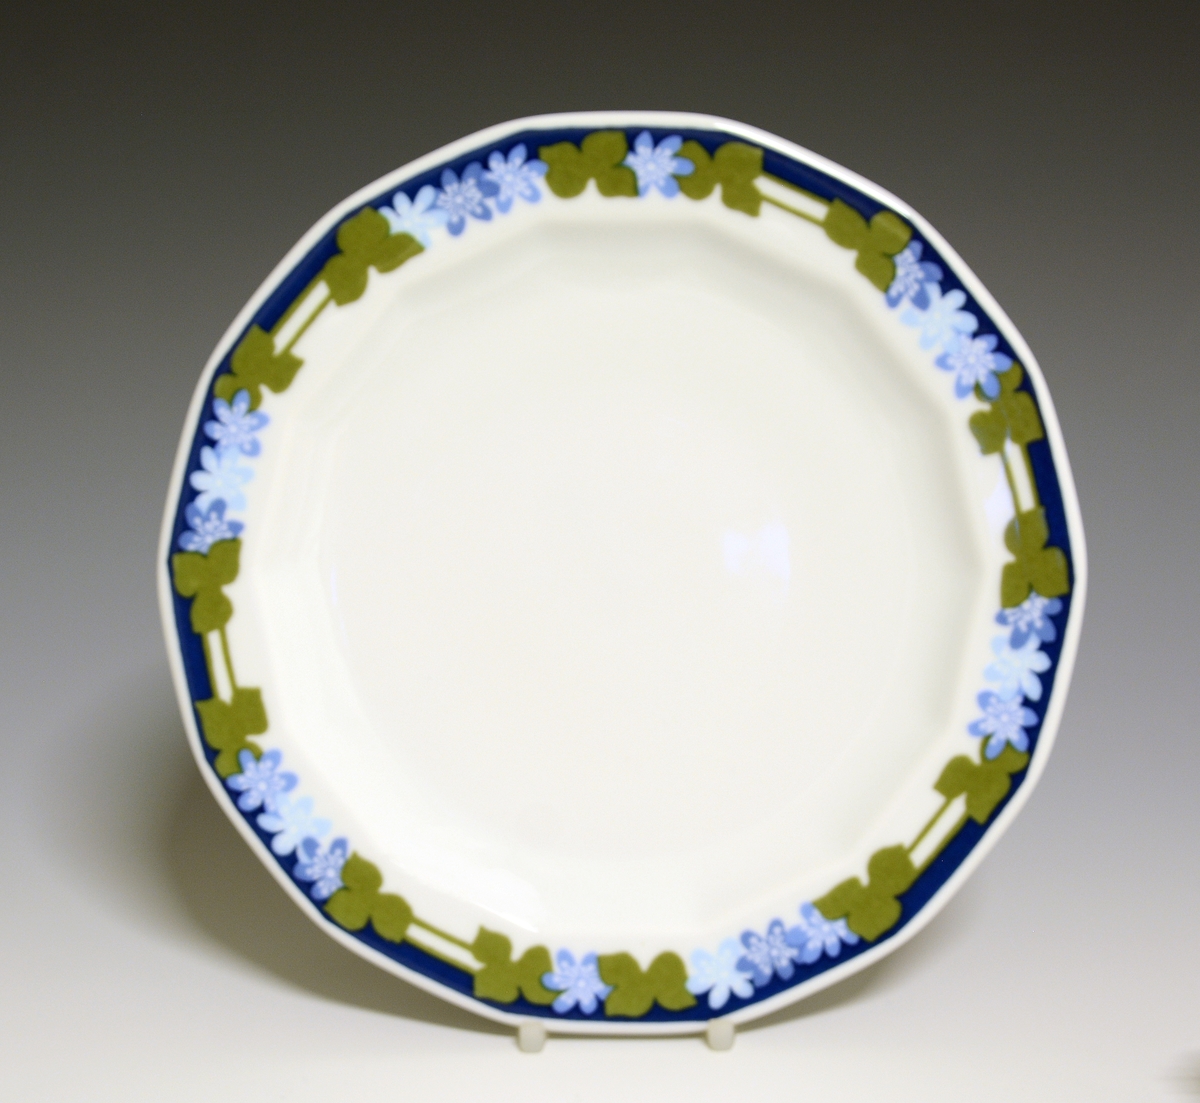 Mangekantet tallerken av porselen med hvit glasur. Dekorert med blåveisdekor. 
Modell: Octavia, tegnet av Grete Rønning i 1977.
Dekor: Blå Anemone